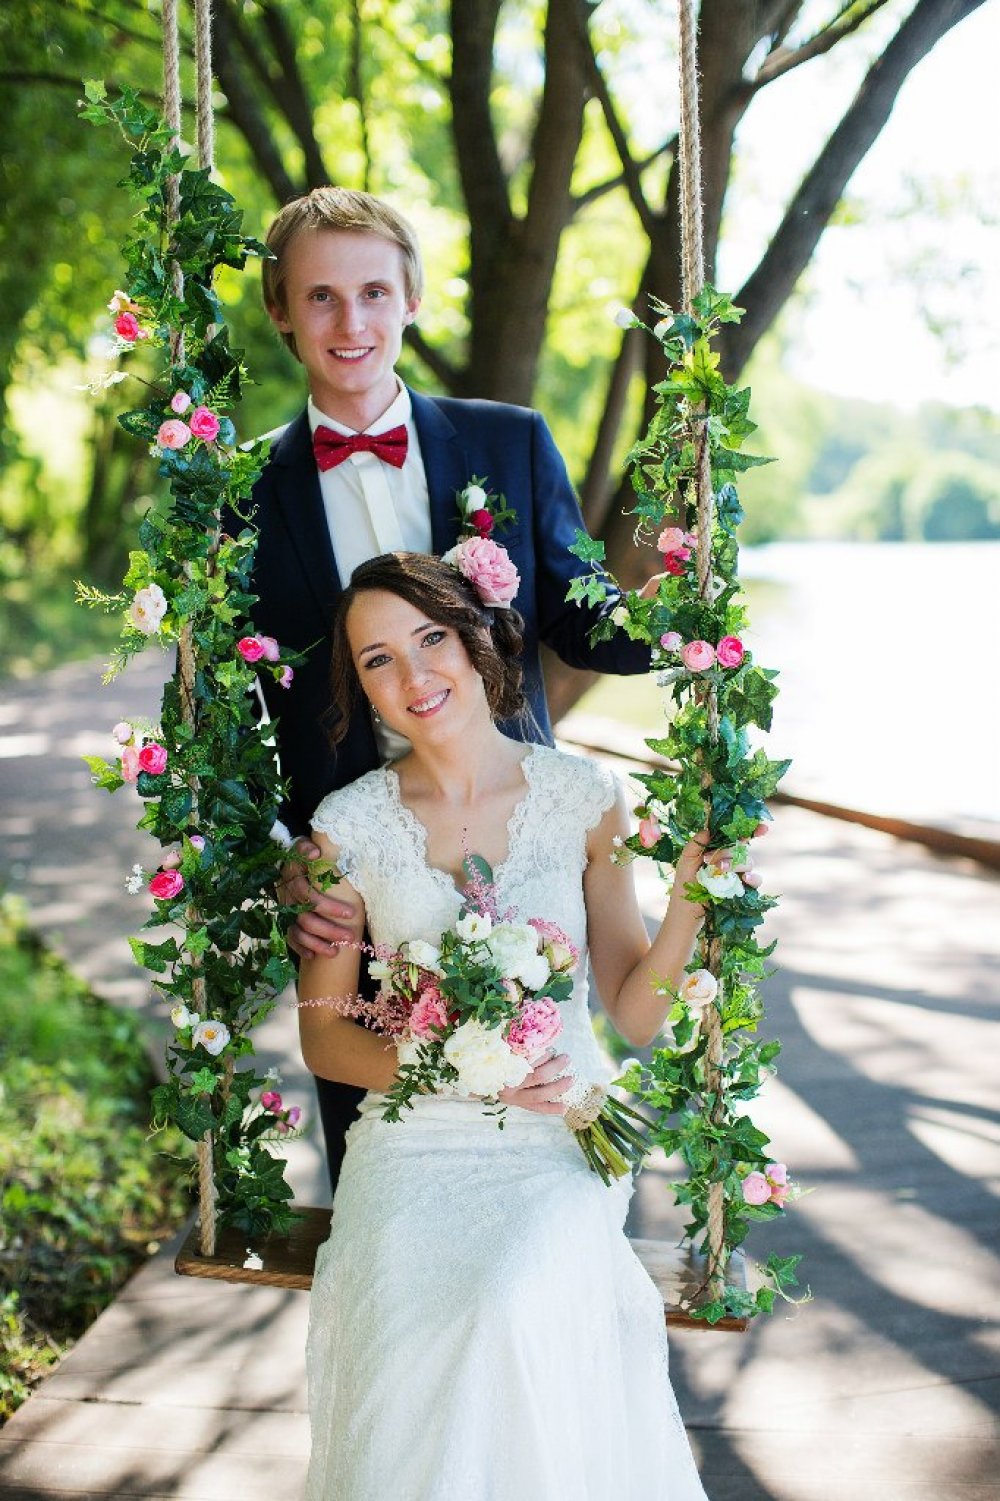 Качели с растительностью и цветами - прекрасная деталь для свадебной фотосессии